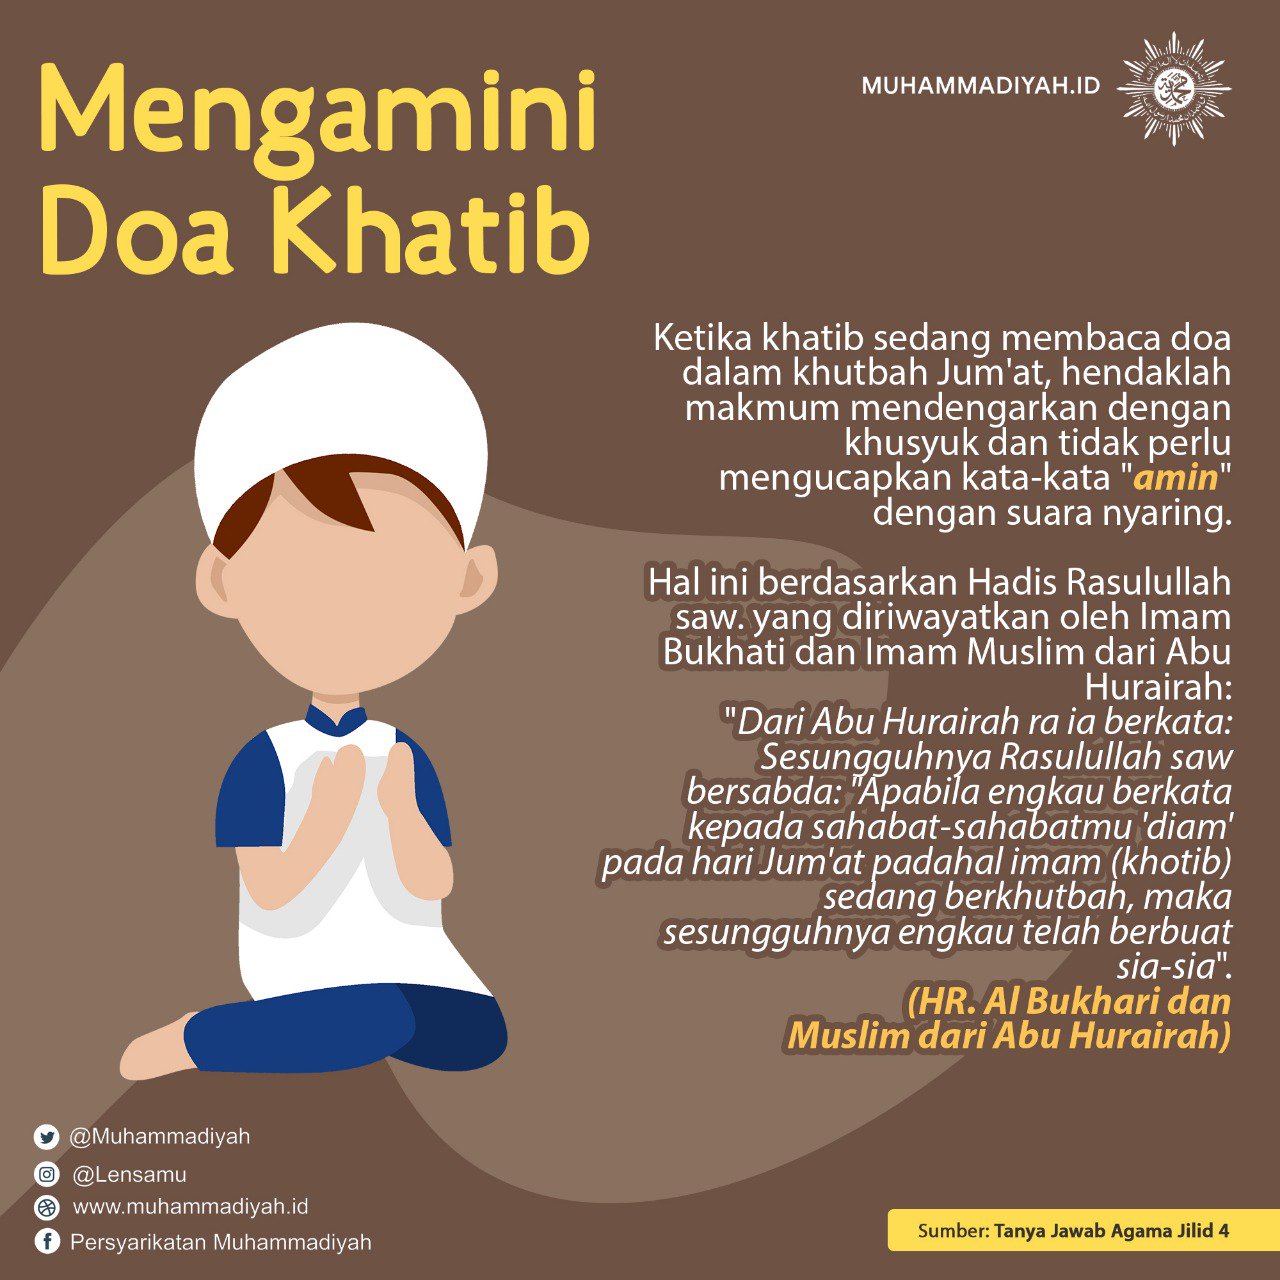 Muhammadiyah Twitter Ketika Khatib Sedang Membaca